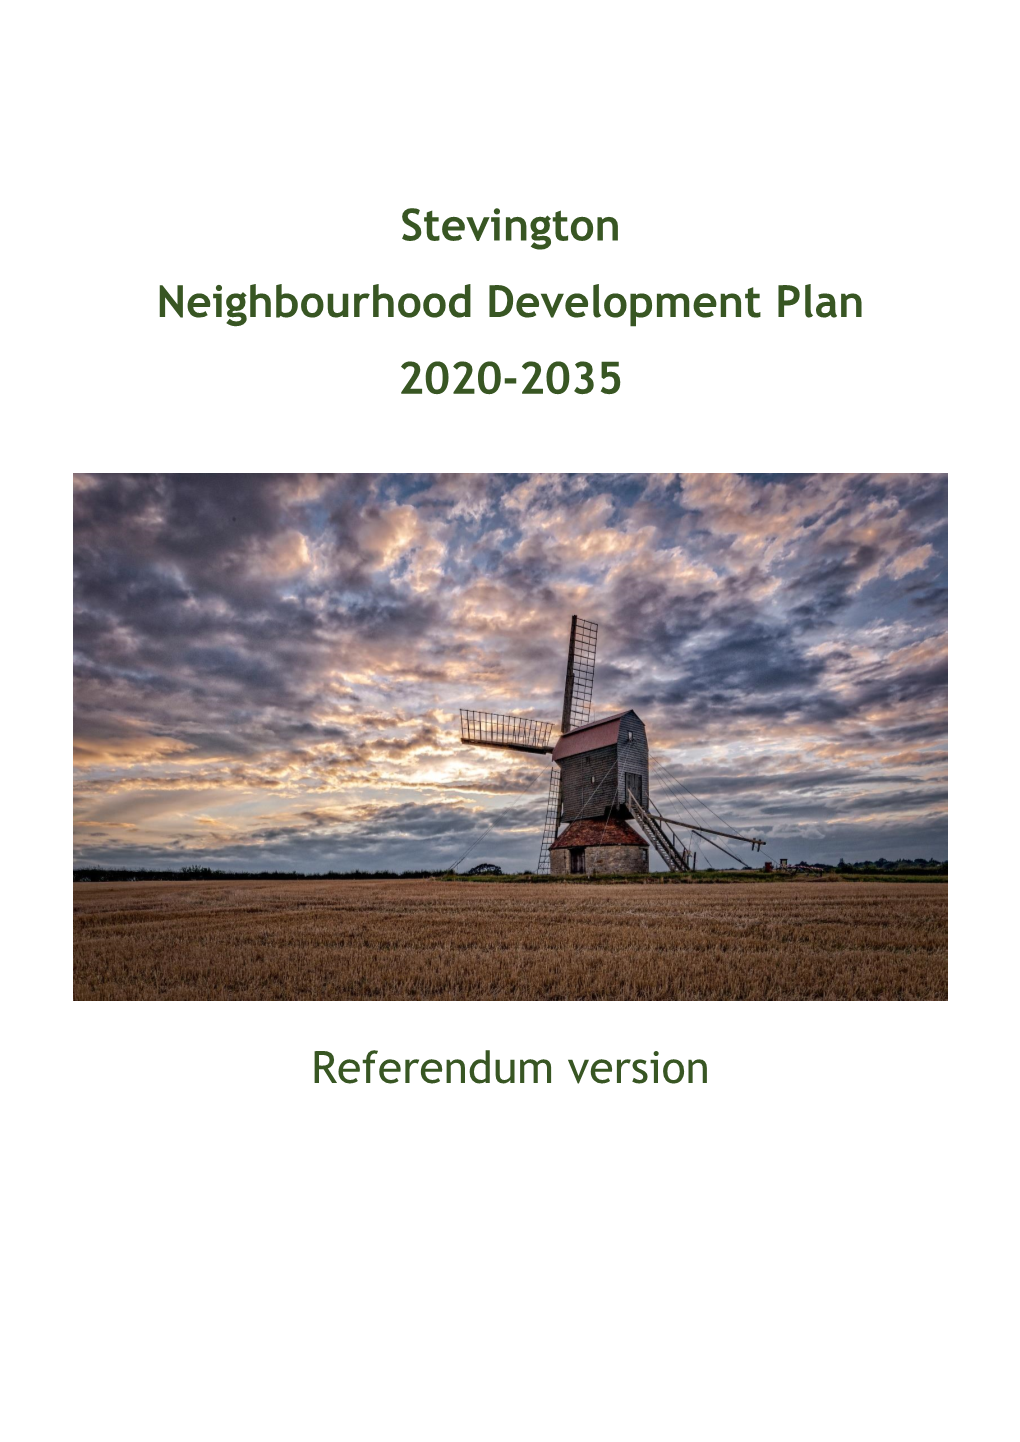 Stevington Neighbourhood Development Plan Referendum Version